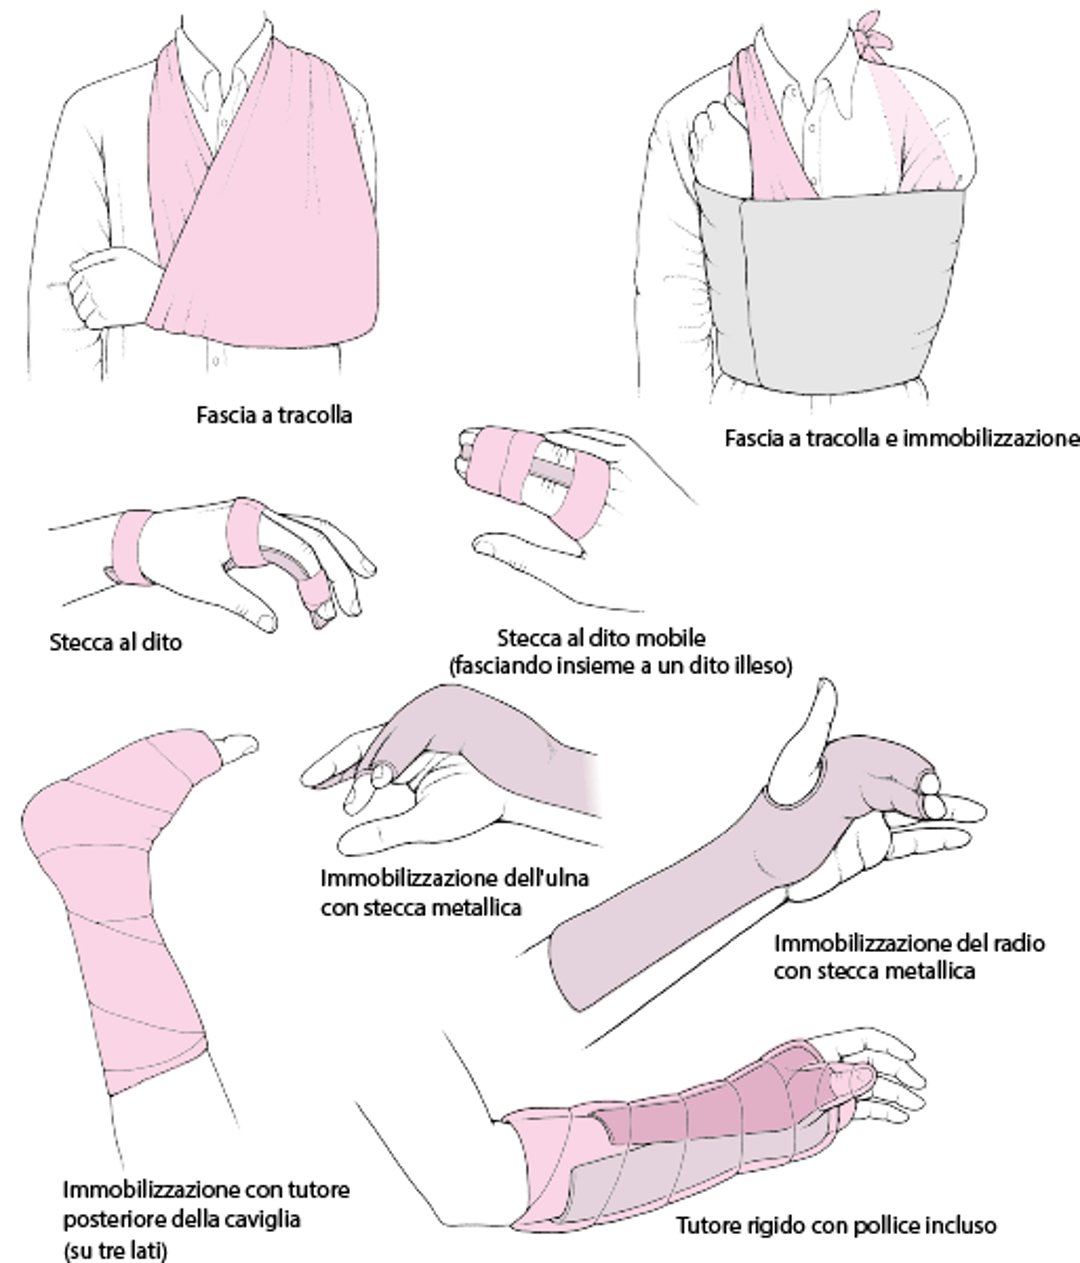 Immobilizzazione dell'articolazione interessata come trattamento immediato: alcune tecniche comunemente usate